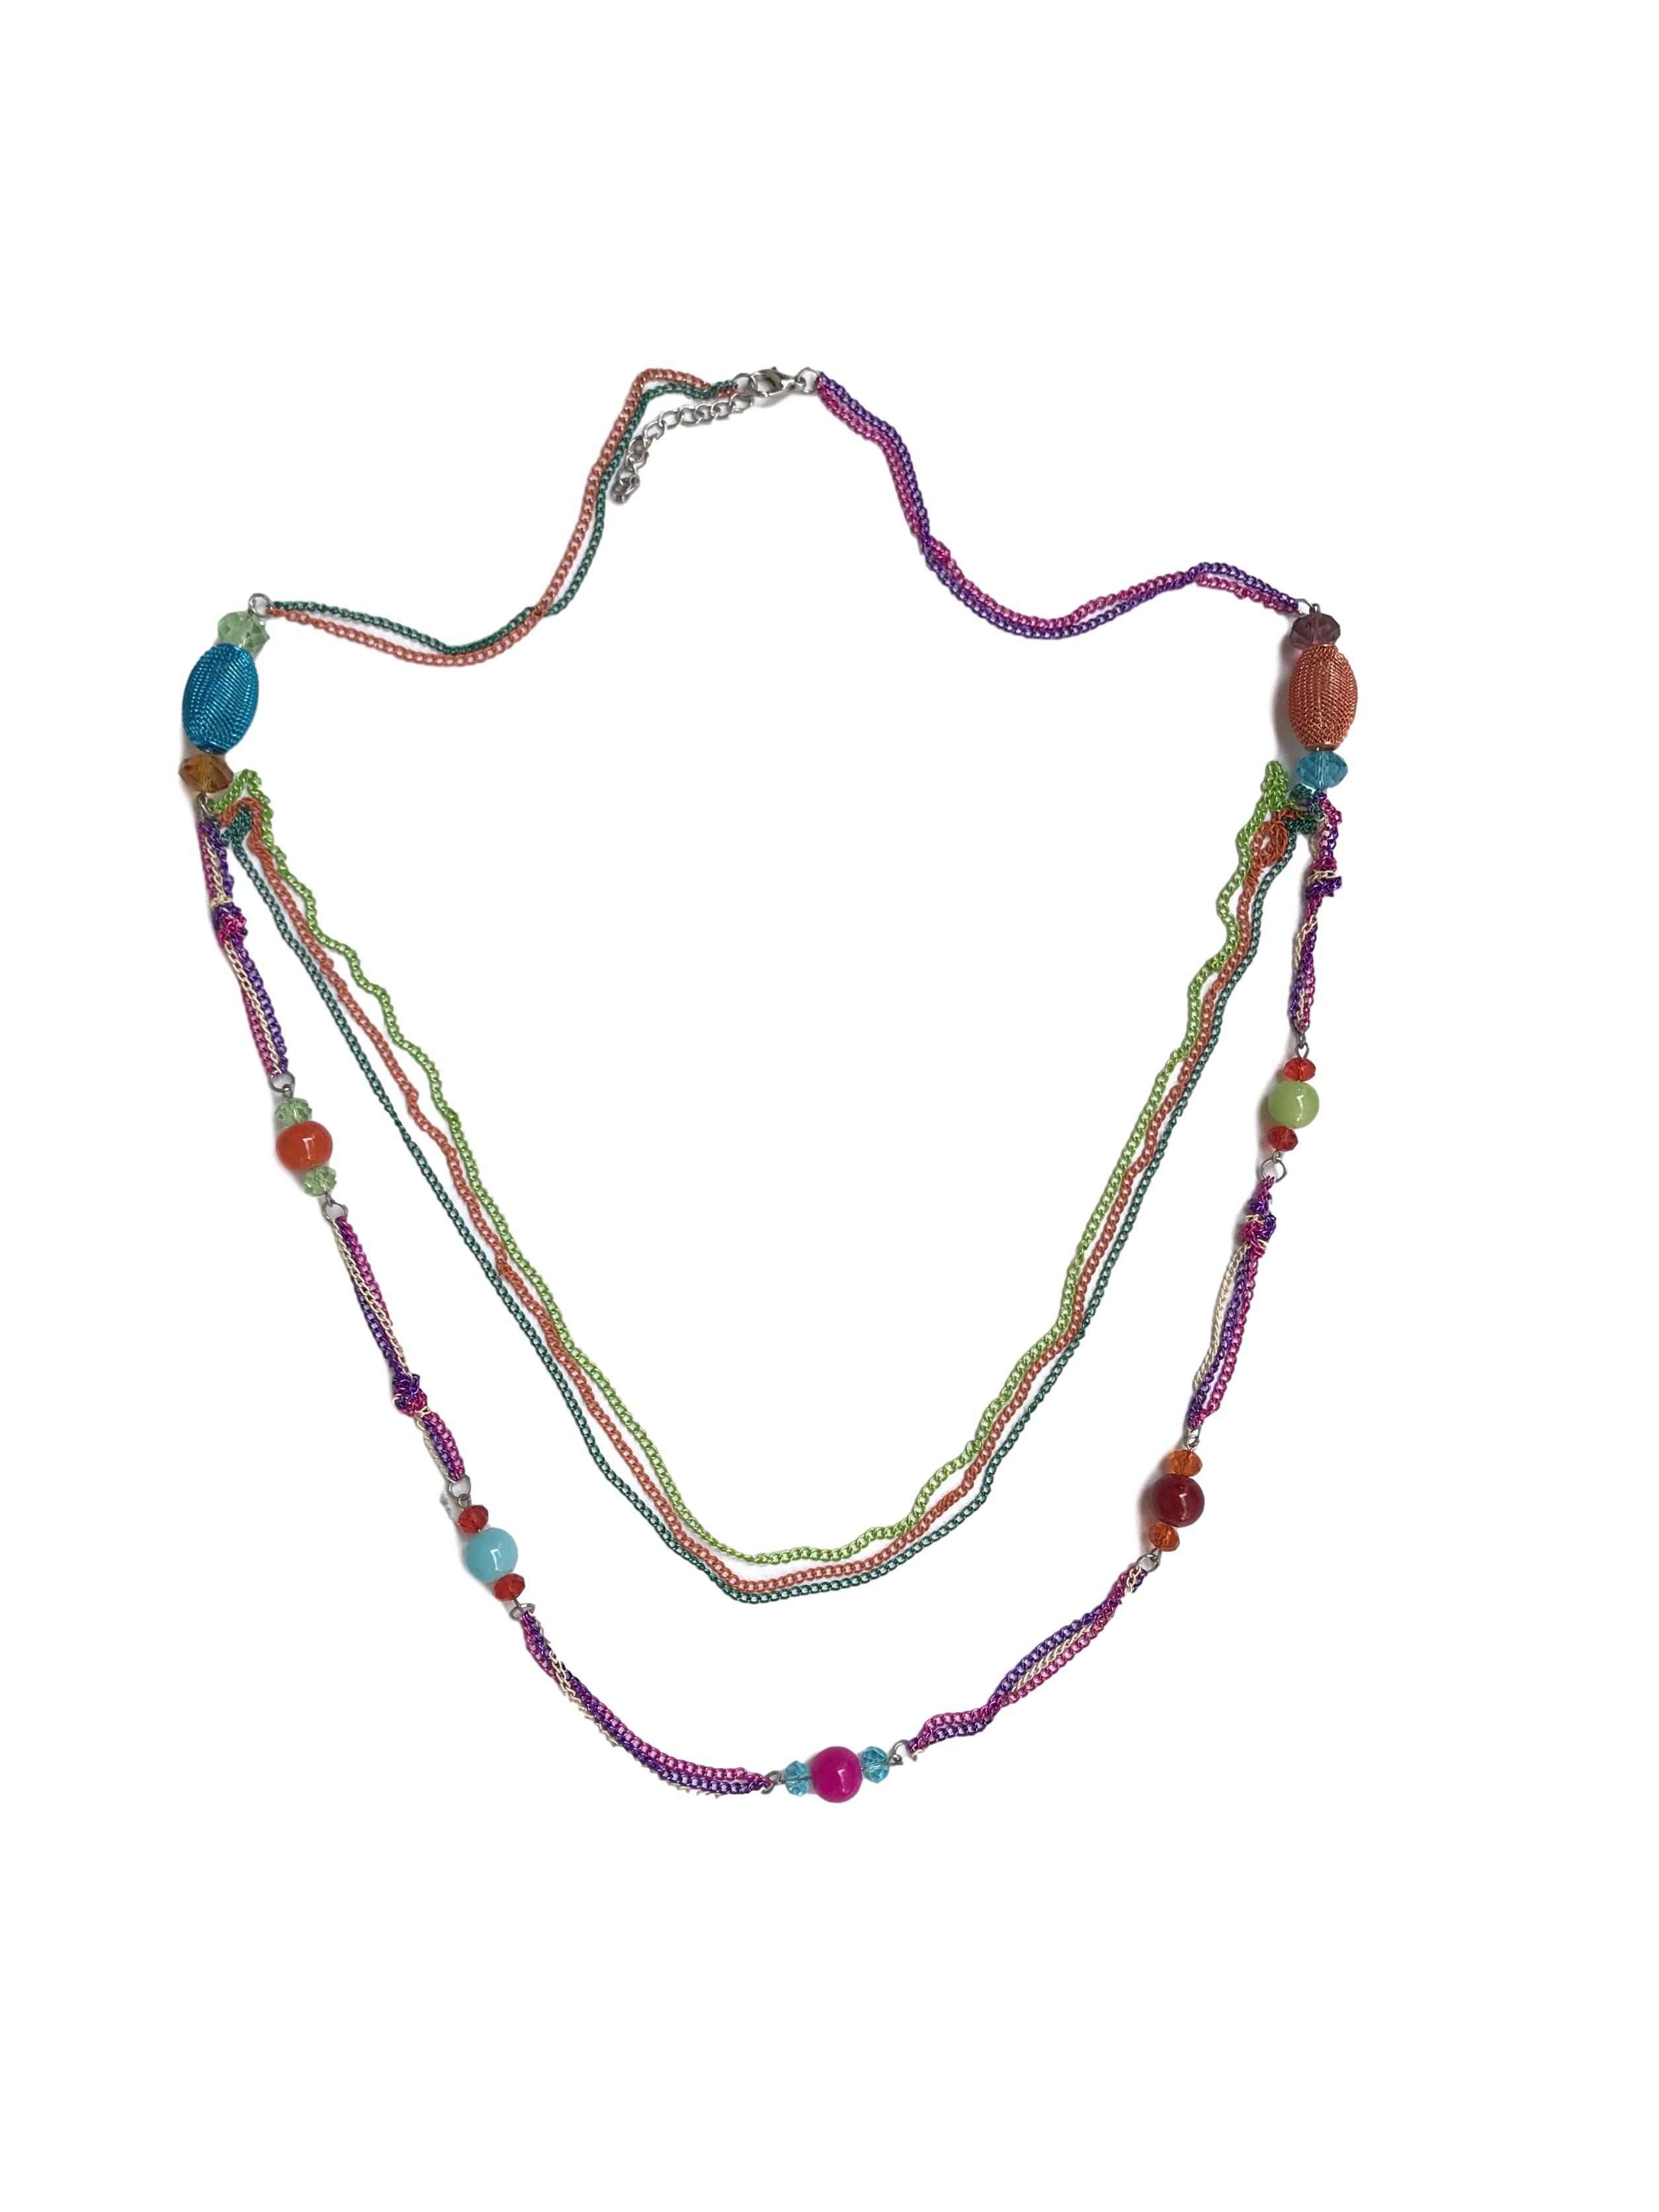 Maxi collar de cadenas y cuentas multicolores. Largo 95cm (+6cm regulables)